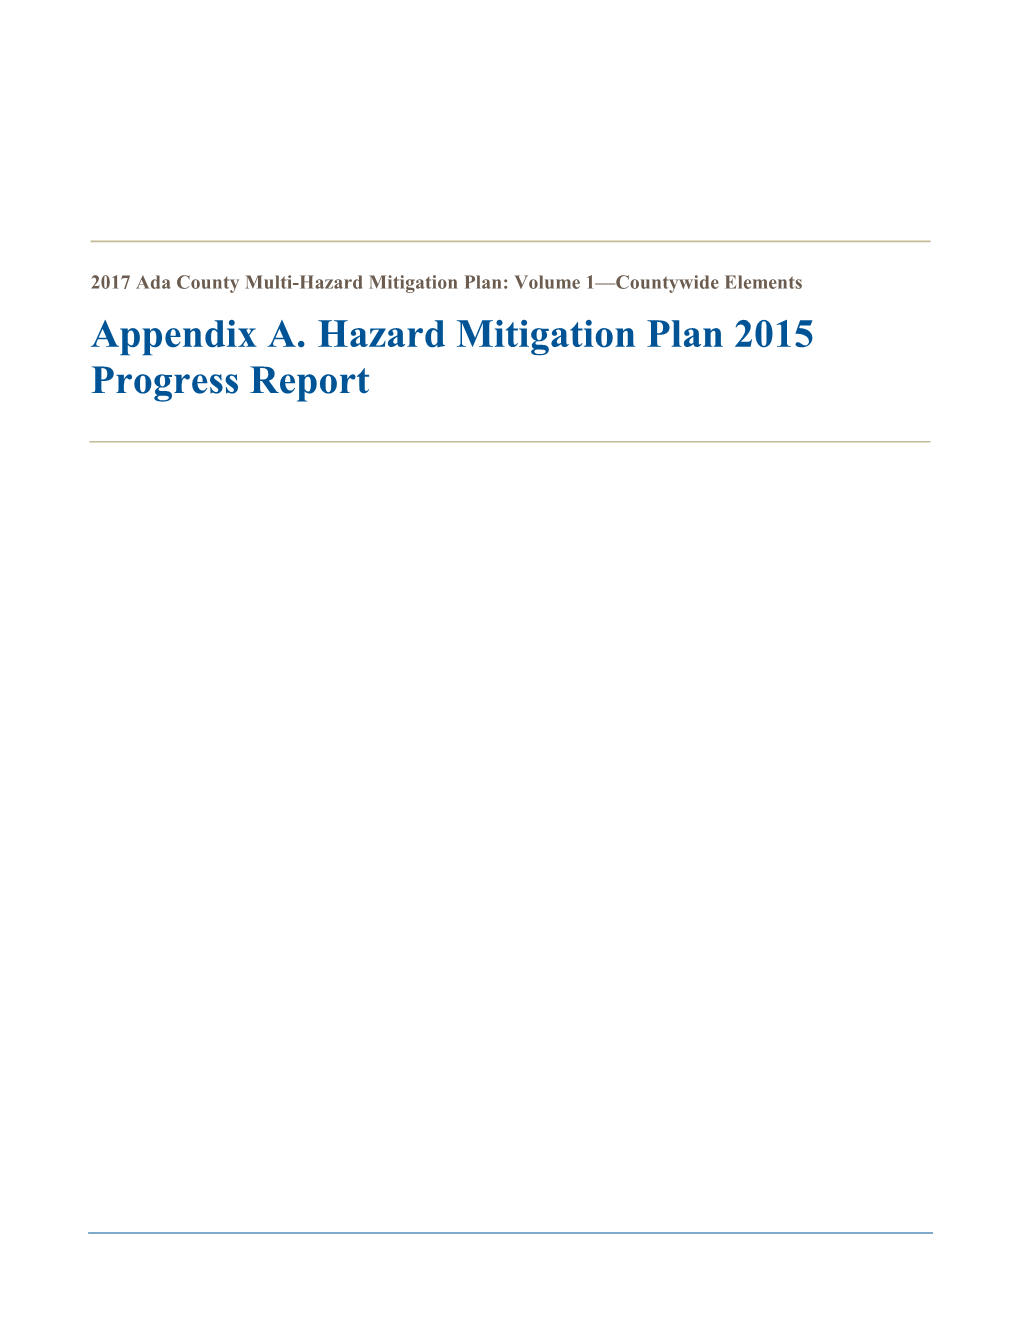 Appendix A. Hazard Mitigation Plan 2015 Progress Report